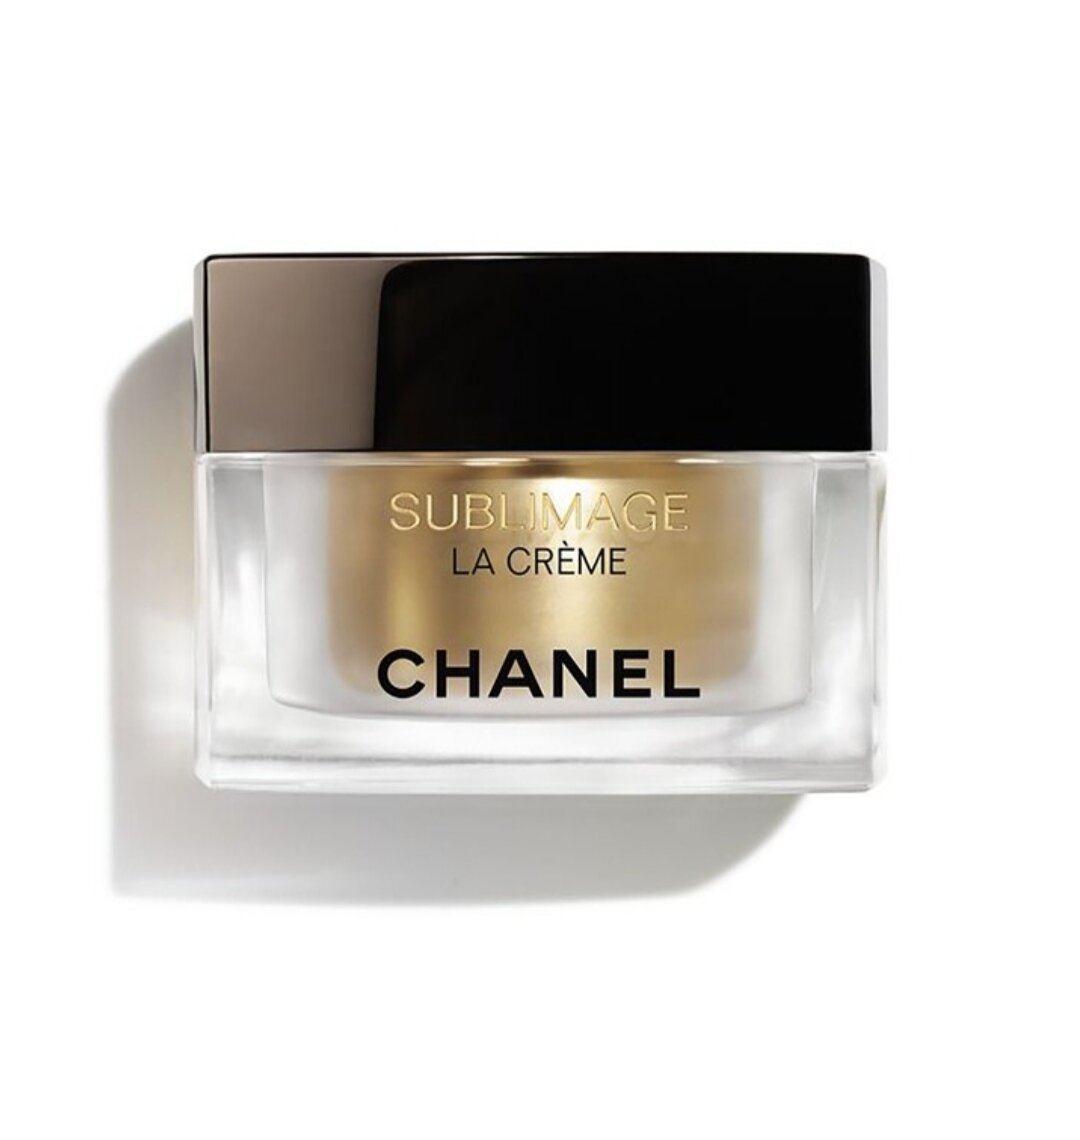 Chanel Sublimage La Creme Фундаментальный регенерирующий крем для лица и шеи универсальная текстура, 50 мл